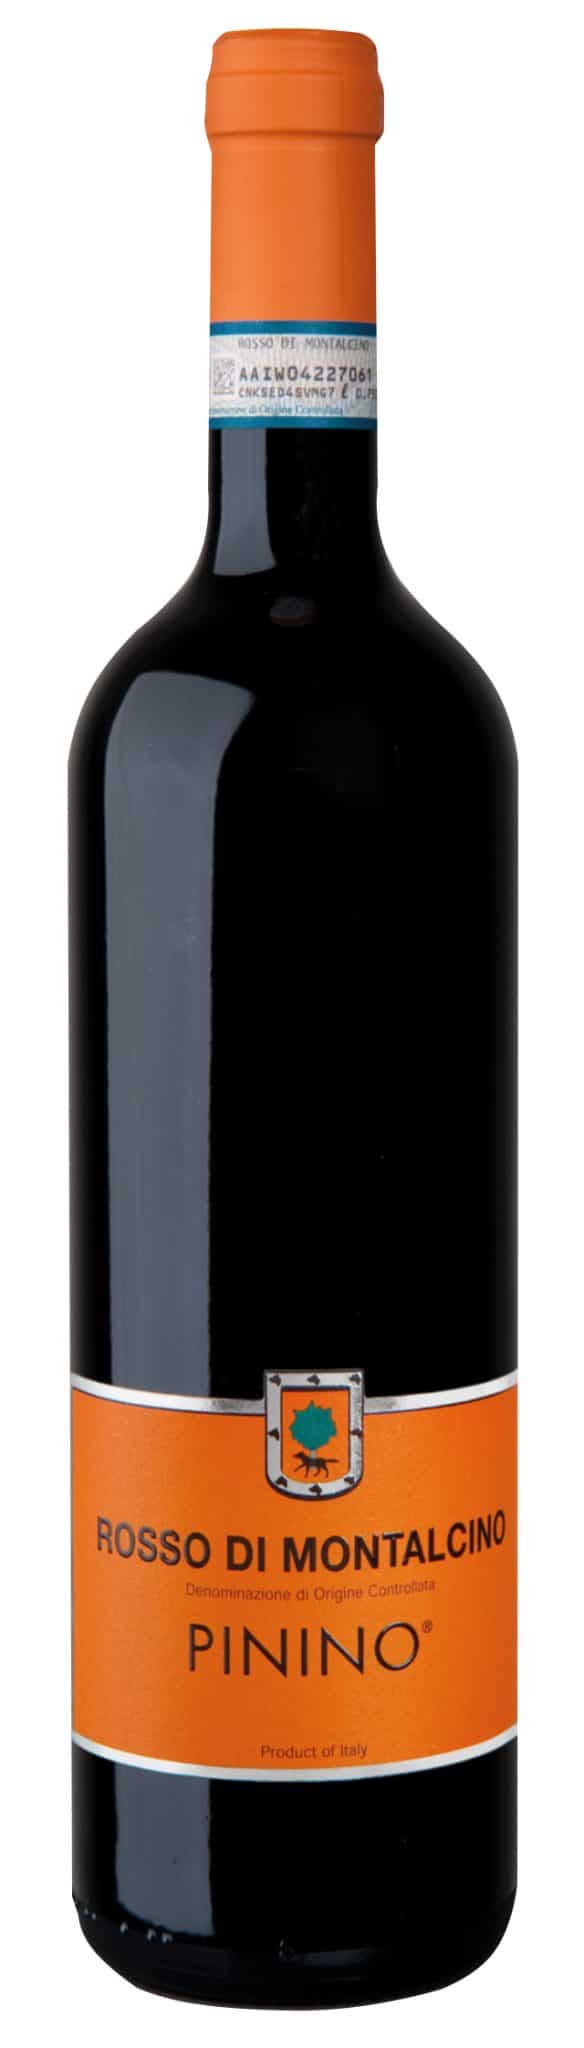 Rosso di Montalcino er inspireret af ideen om en frugt- og ungdommelig tilgang til vinfremstilling. Vinen besidder masser af moden frugt med hindbær og kirsebærkarakter. Fyldig med tæt fløjlsagtig tannin, dejlig struktur og vedvarende finish.